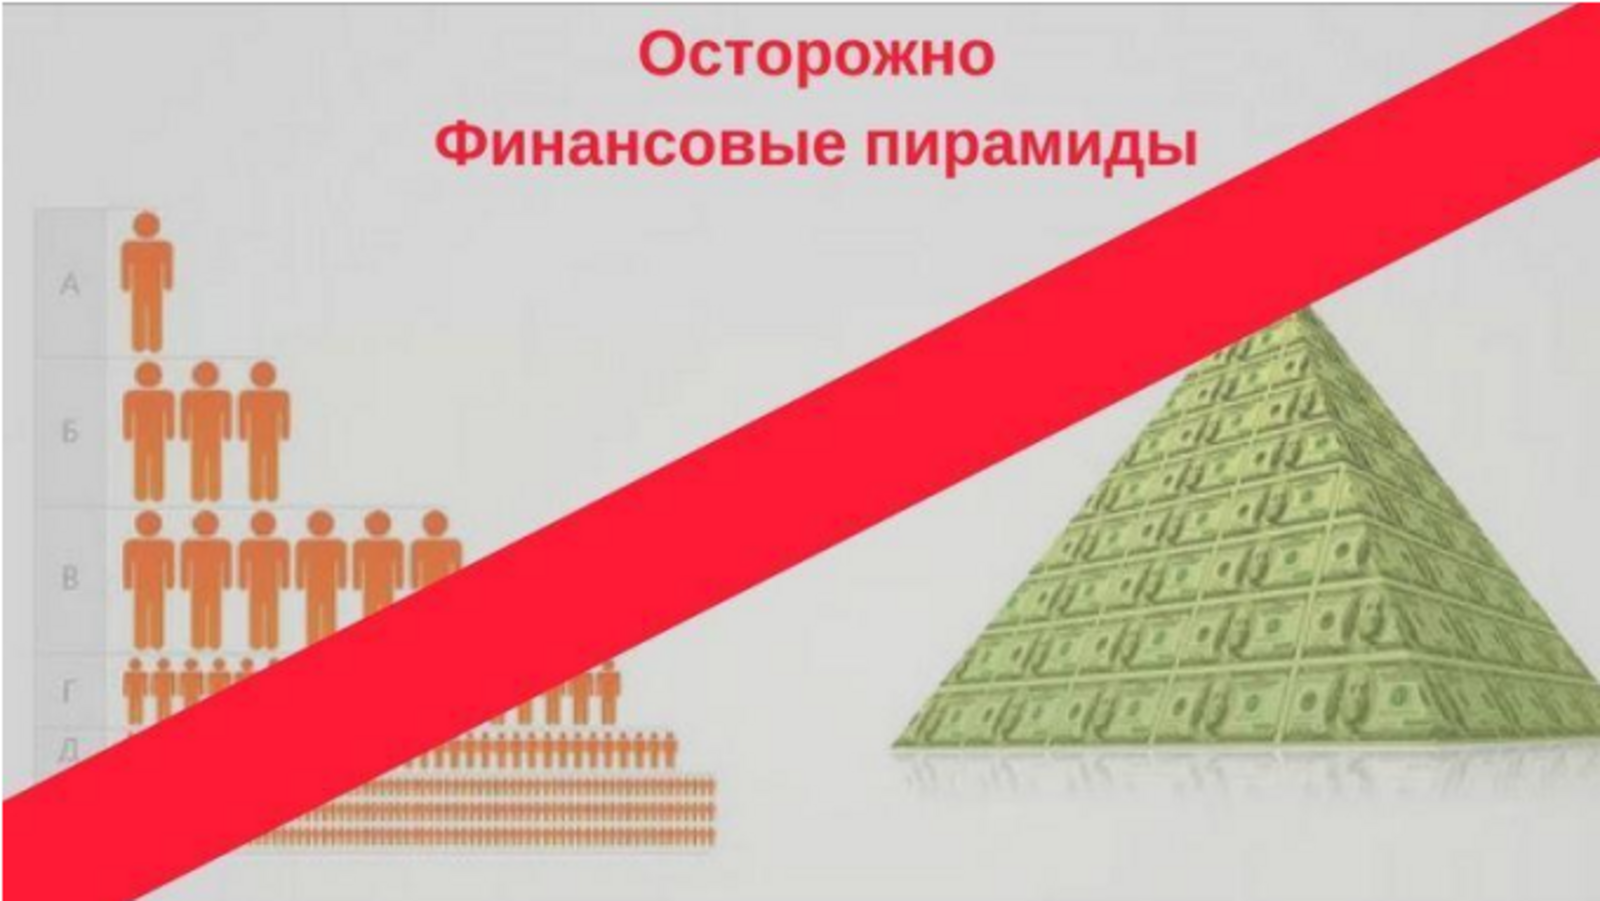 Осторожно, финансовые пирамиды!